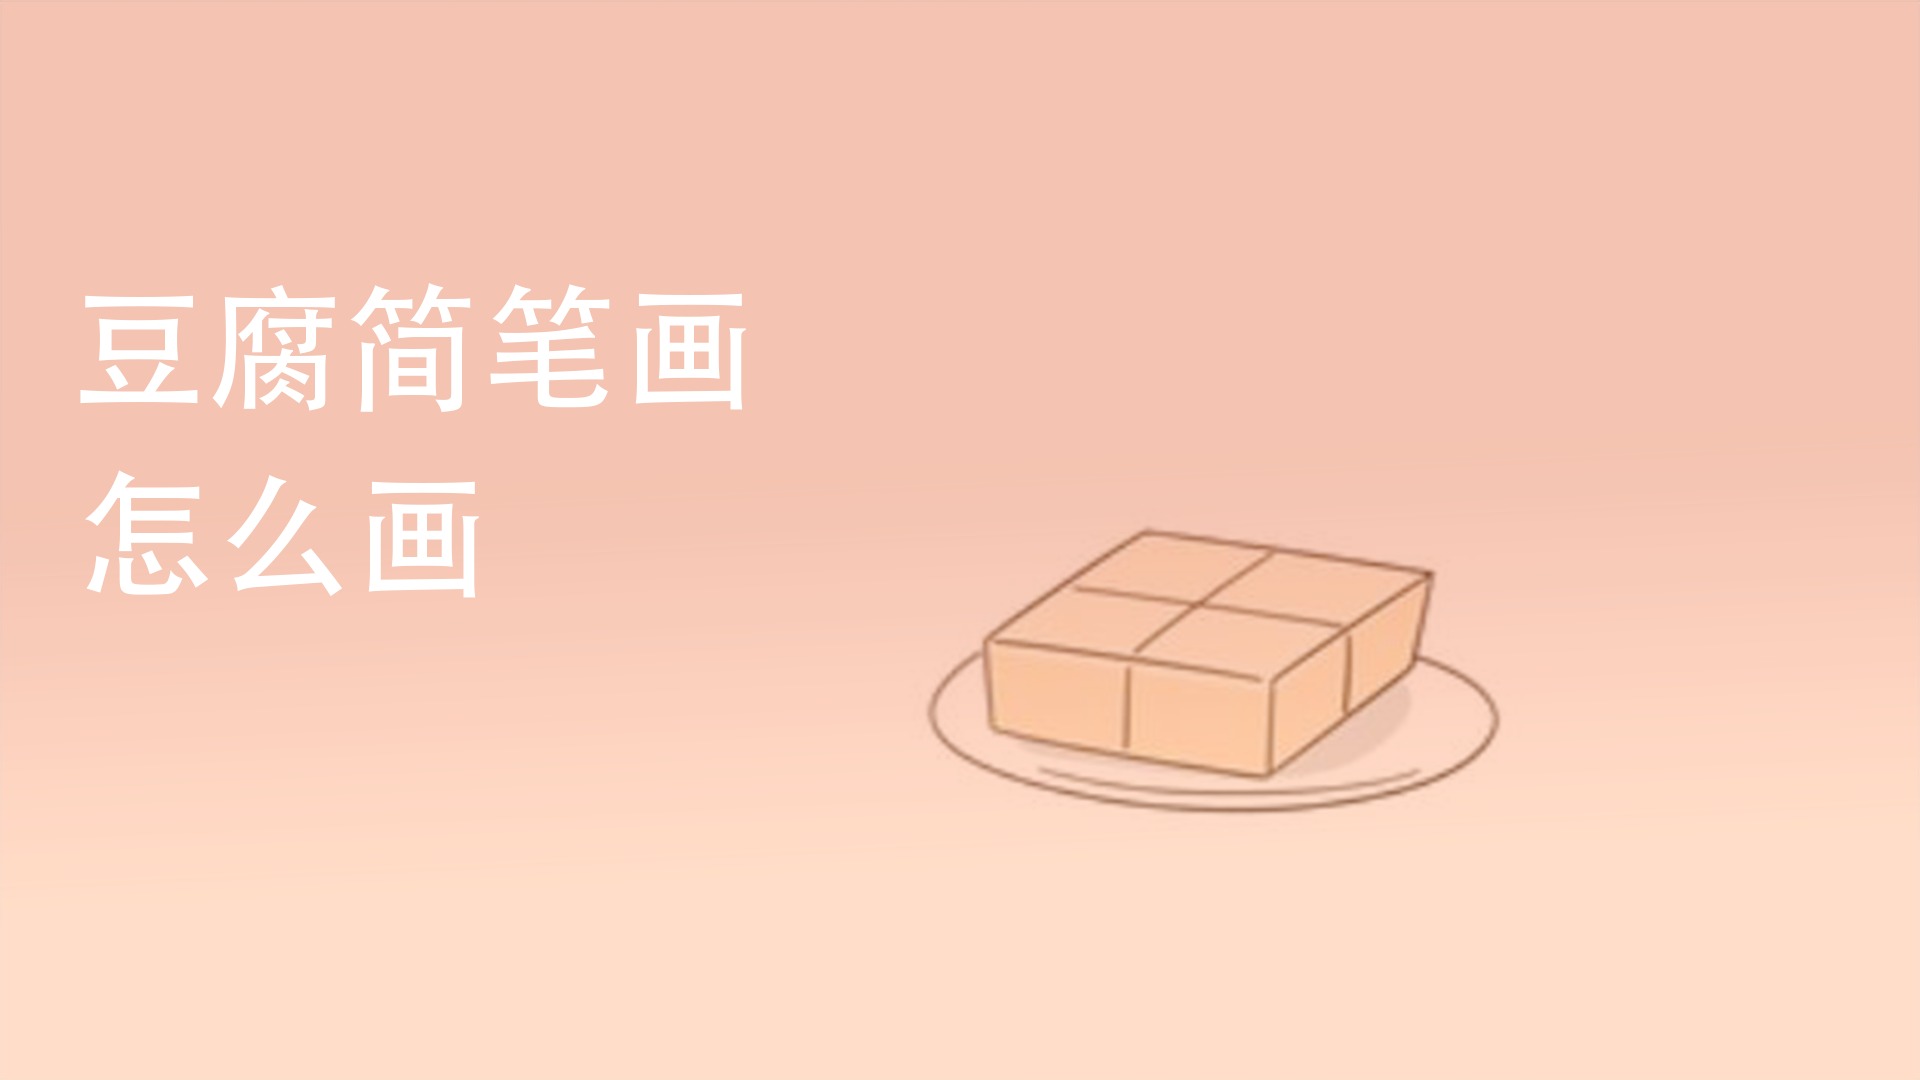 八宝豆腐简笔画图片